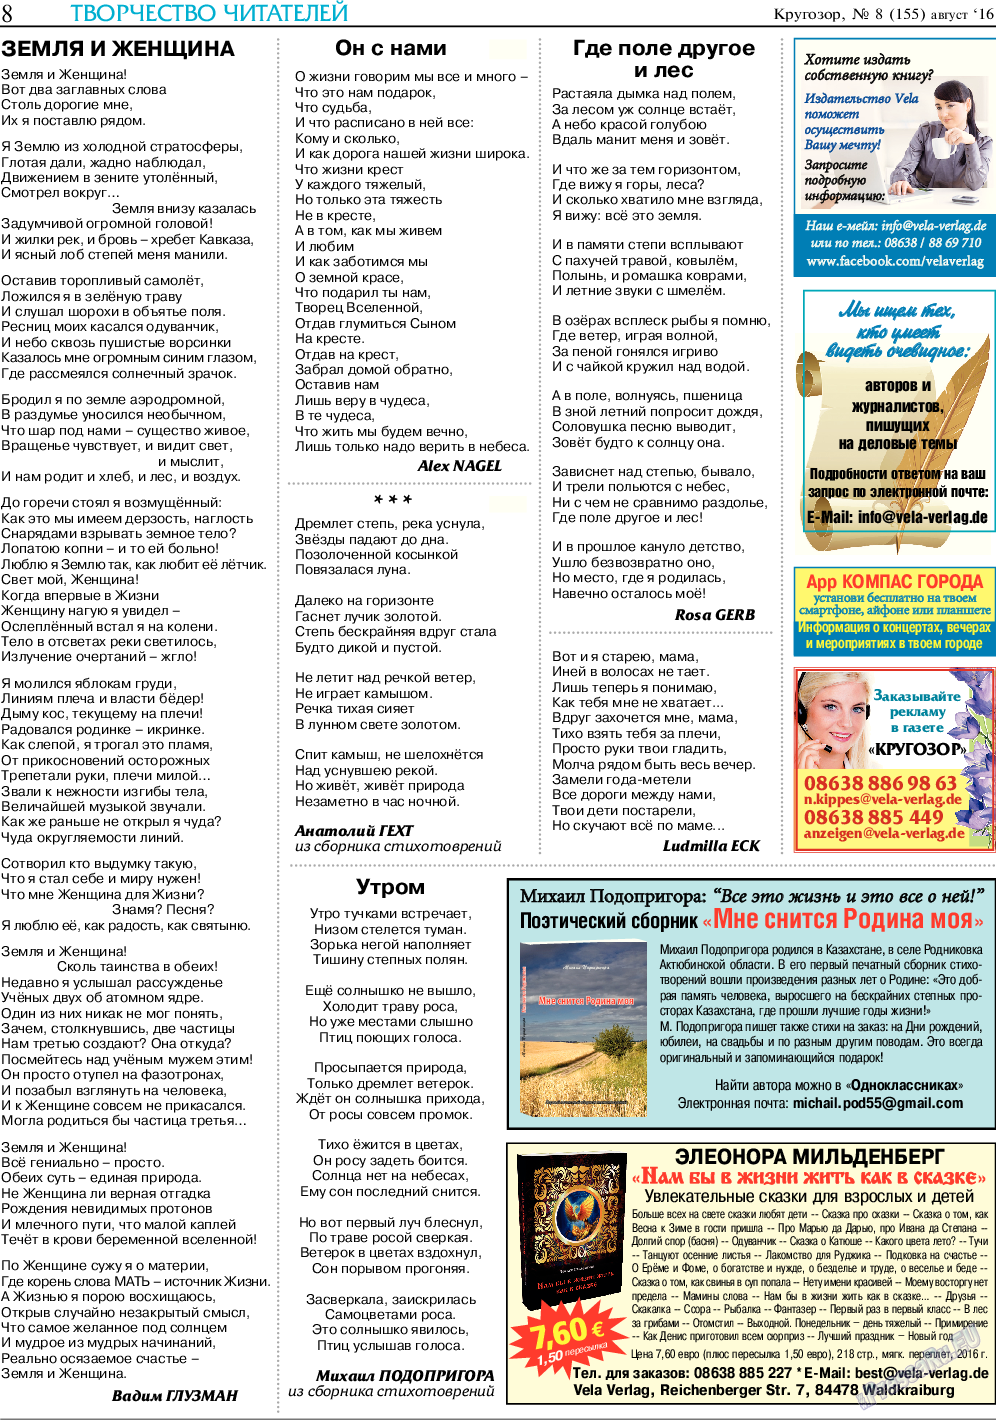 Кругозор, газета. 2016 №8 стр.8